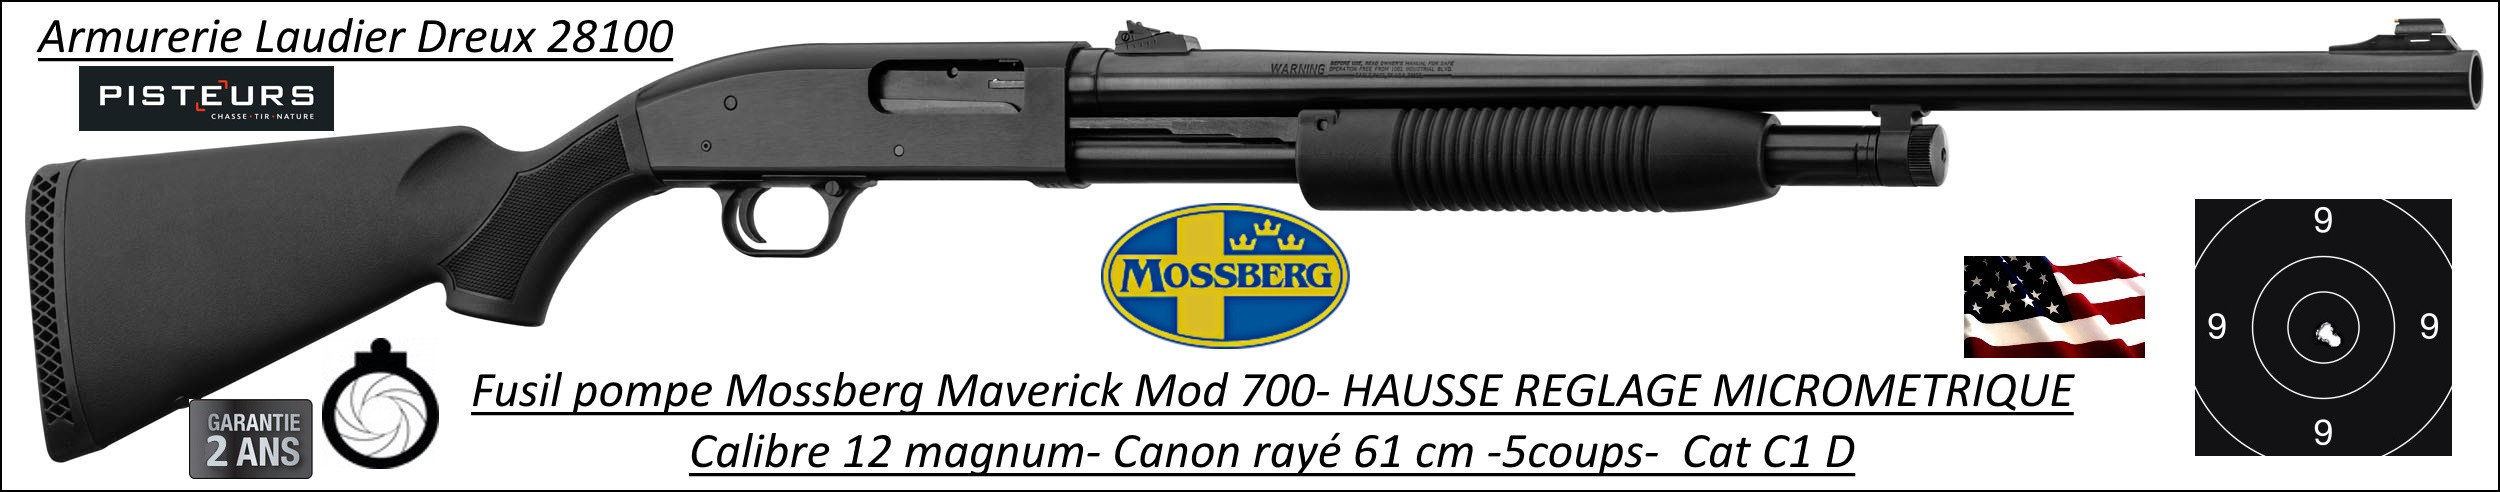 Fusil pompe Mossberg Maverick Tactical Calibre12 Magnum Canon rayé 61 cm hausse micrometrique -Promotion-Ref 37875- MV700